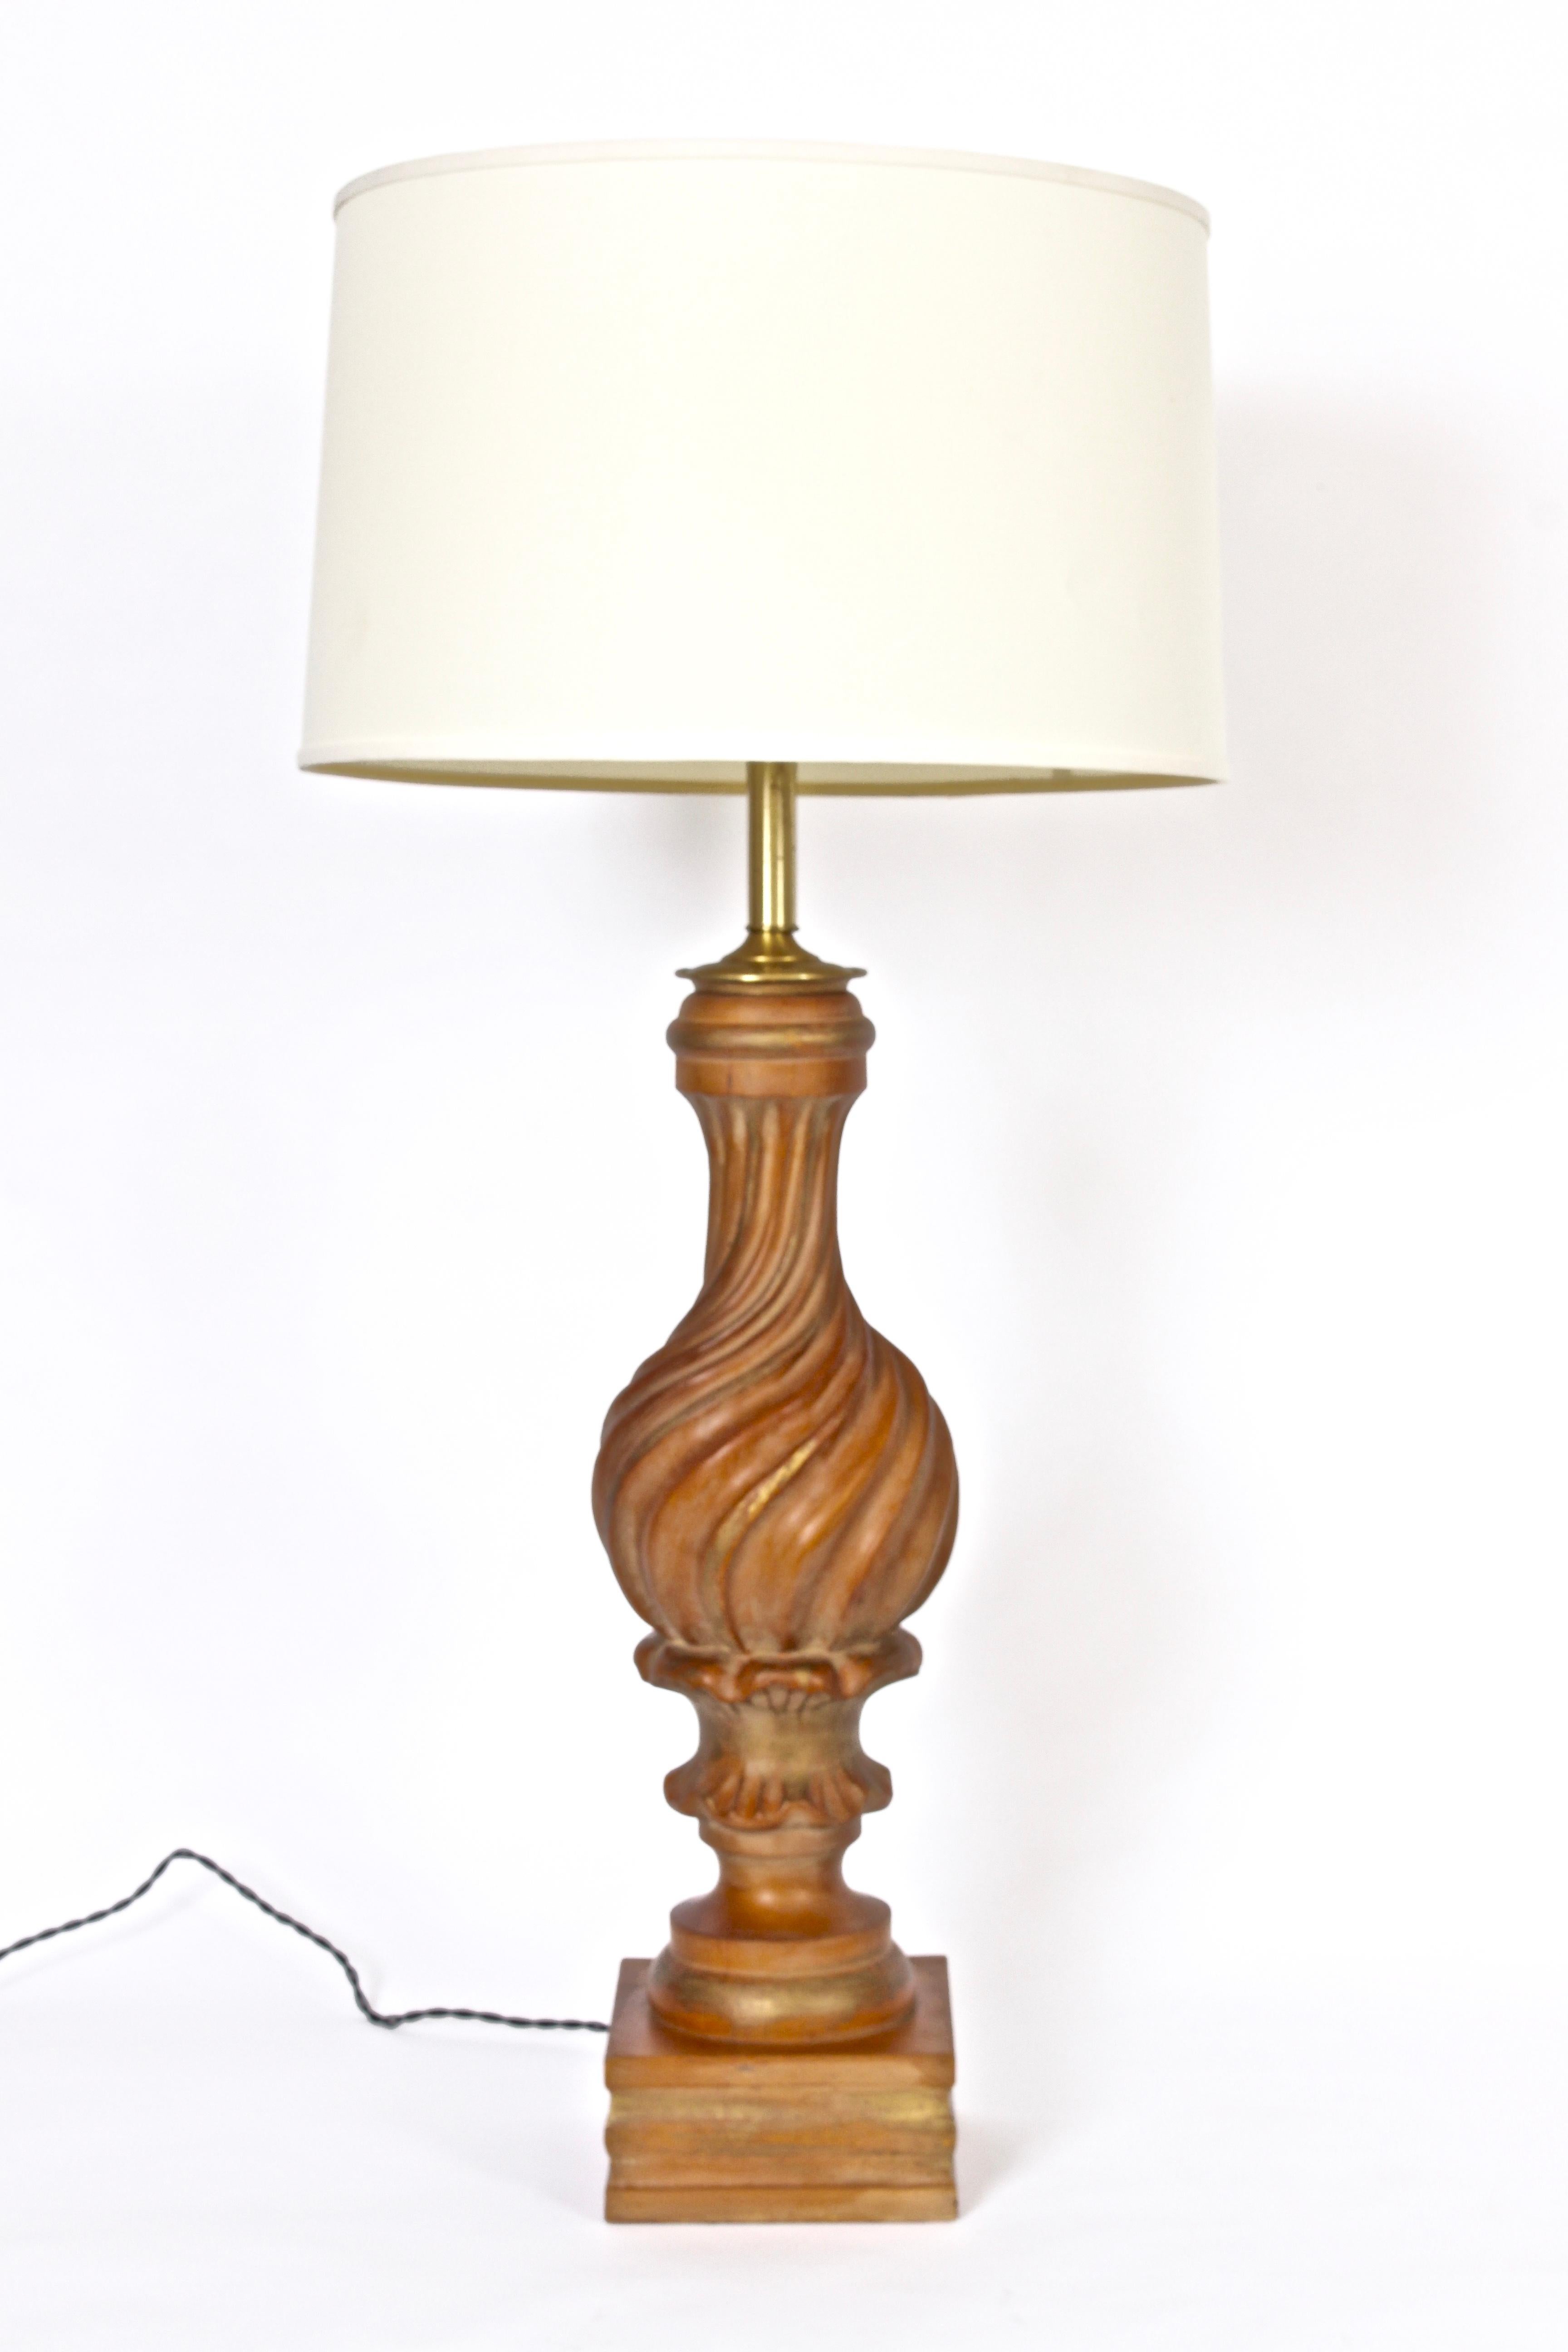 Substantielle lampe de table italienne en bois doré sculptée à la main par Marbro Lamp Company, vers 1960.  Avec un corps en bois tourbillonné fabriqué à la main et légèrement rayé d'or. Sur la base du bloc. Faible encombrement. Abat-jour présenté